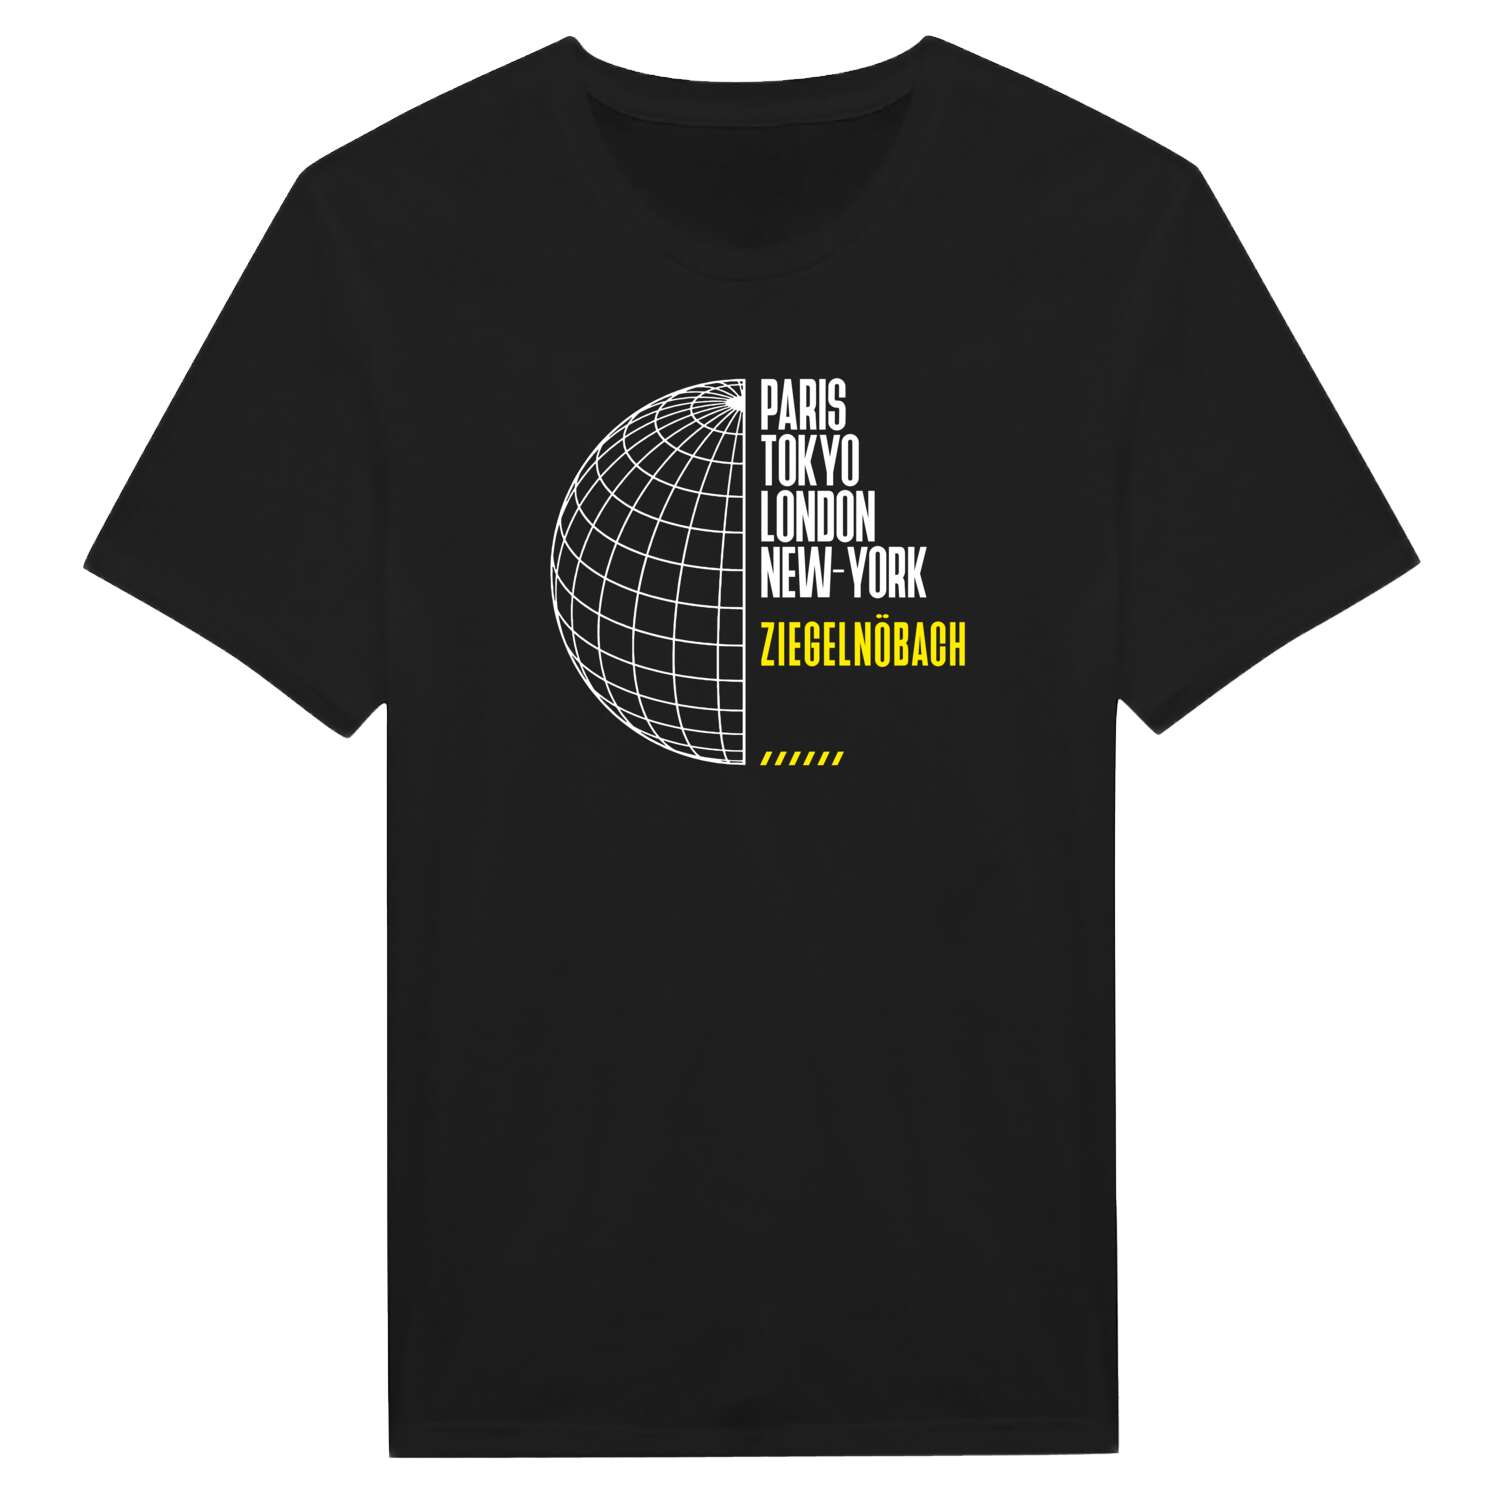 Ziegelnöbach T-Shirt »Paris Tokyo London«